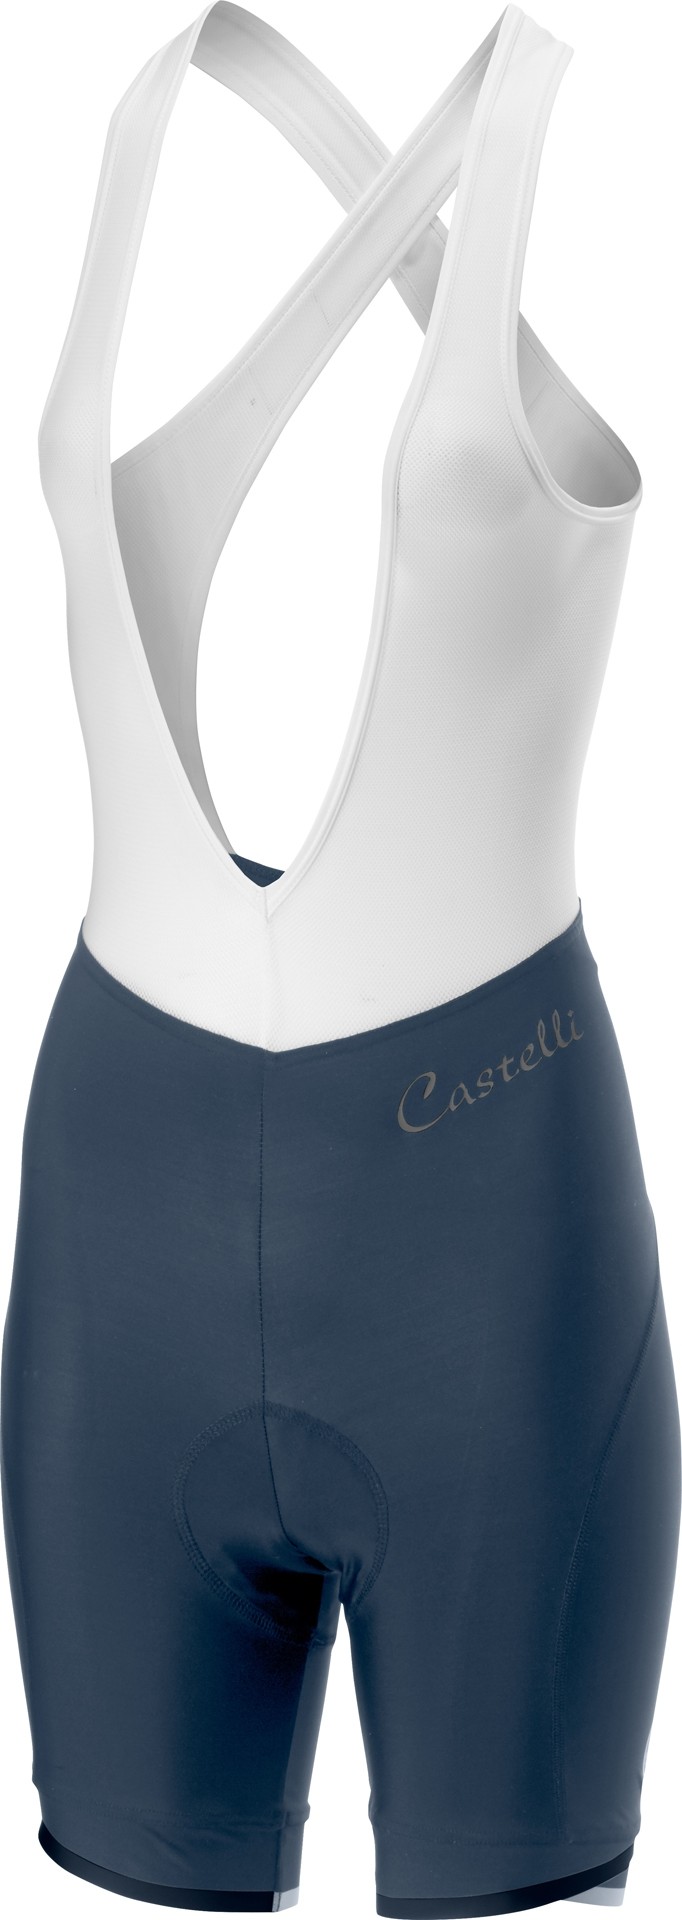 Castelli vista cuissard court avec bretelles femme steel blue foncé